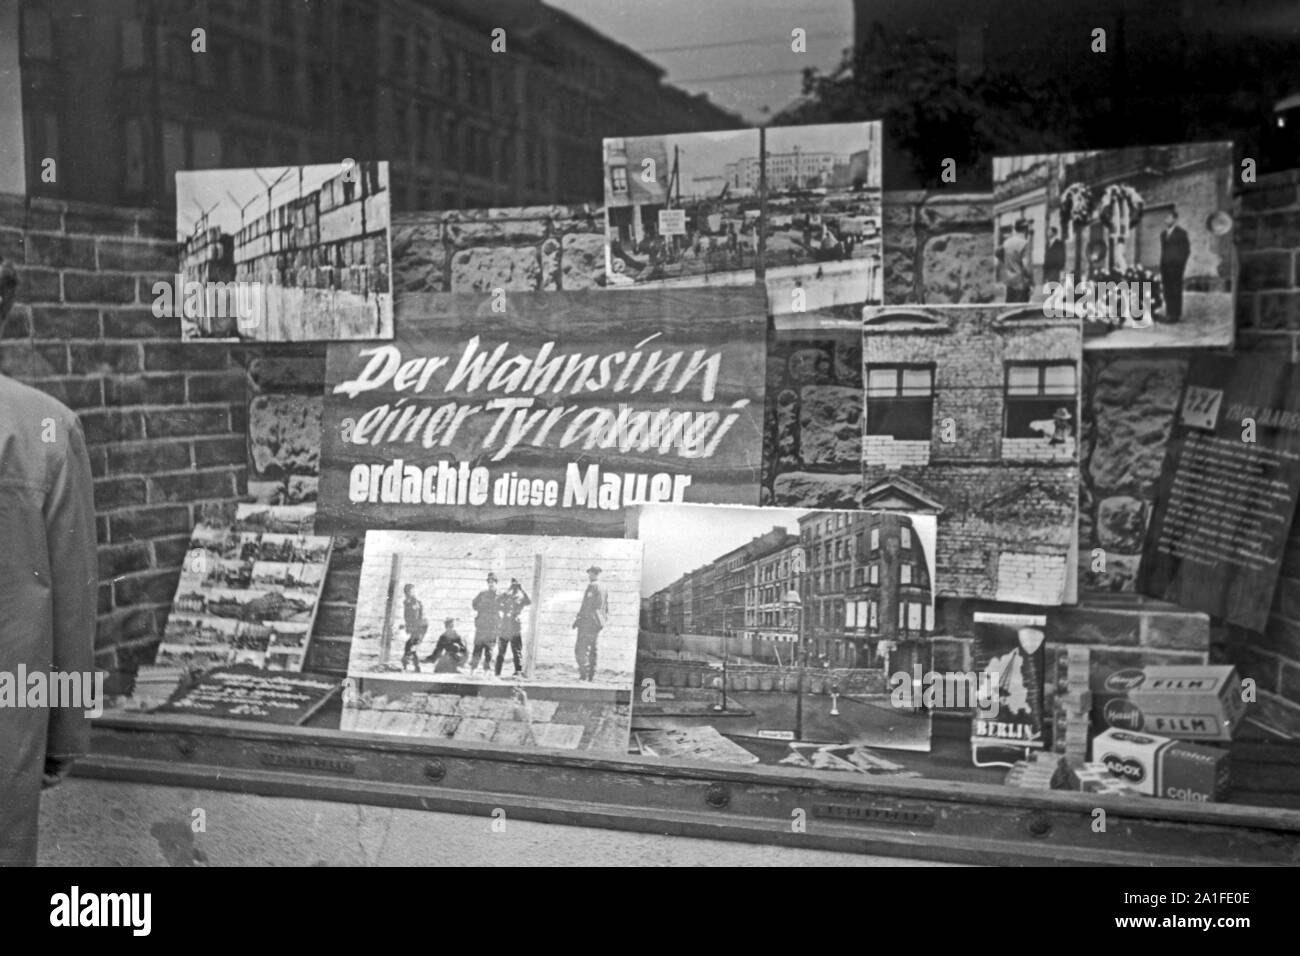 Schaufensterdekoration 'Der Wahnsinn einer Tyrannei erdachte diese Mauer' in einem Souvenirladen in Berlin, Deutschland 1962. Shop window decoration at a souvenir shop in Berlin, Germany 1962. Stock Photo